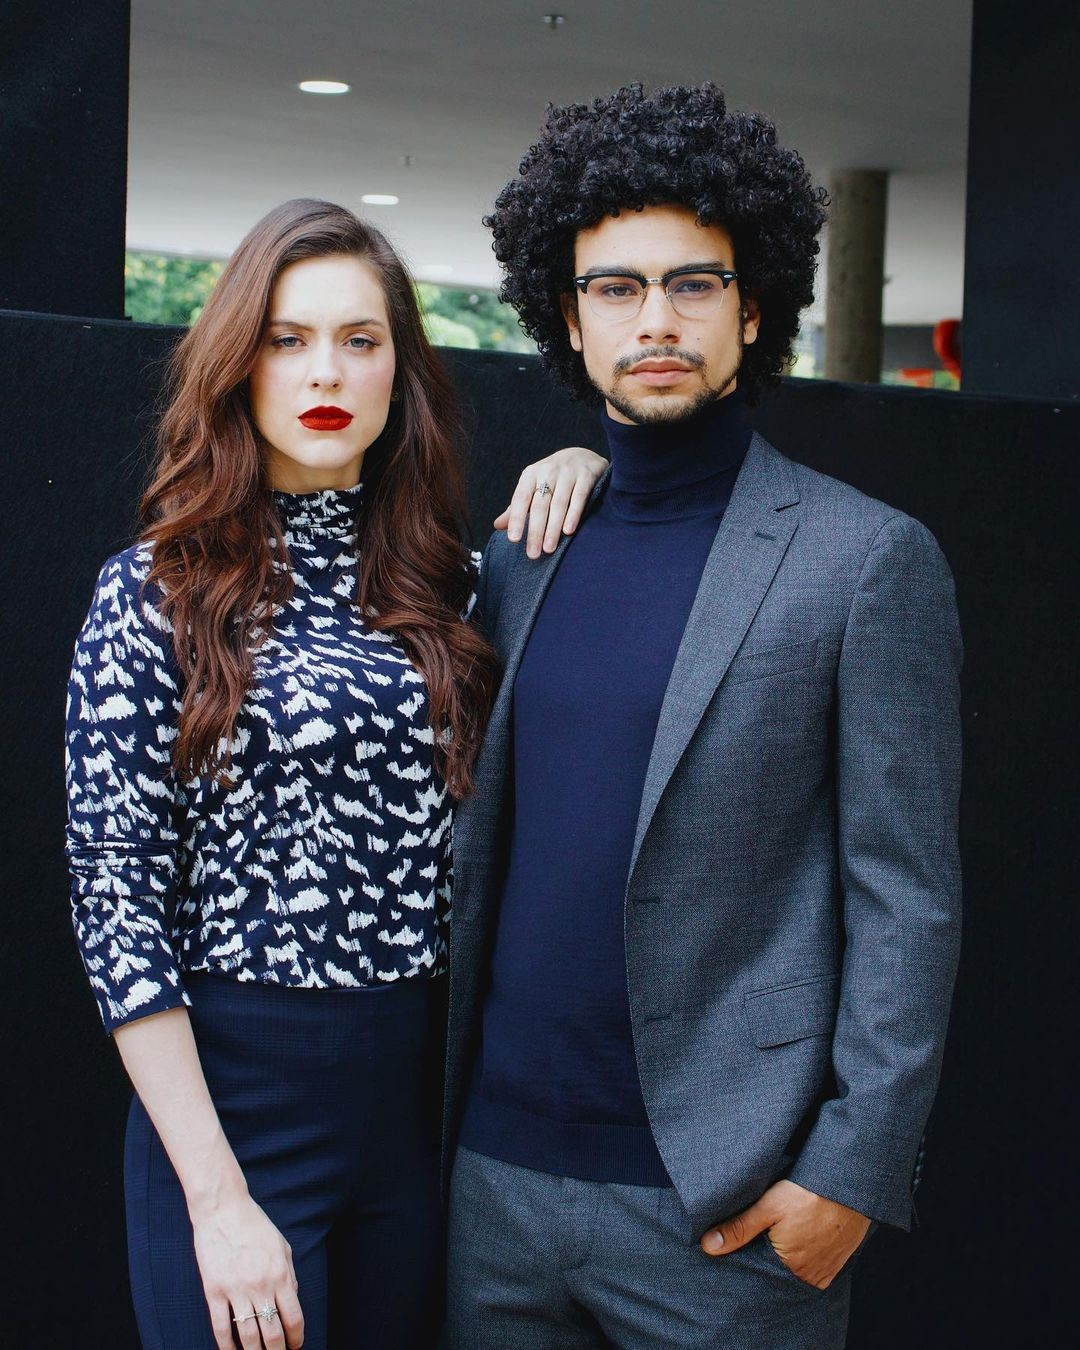 Sophia Abrahão e Sérgio Malheiros posam estilosos em clique no Instagram (Foto: Reprodução/Instagram)